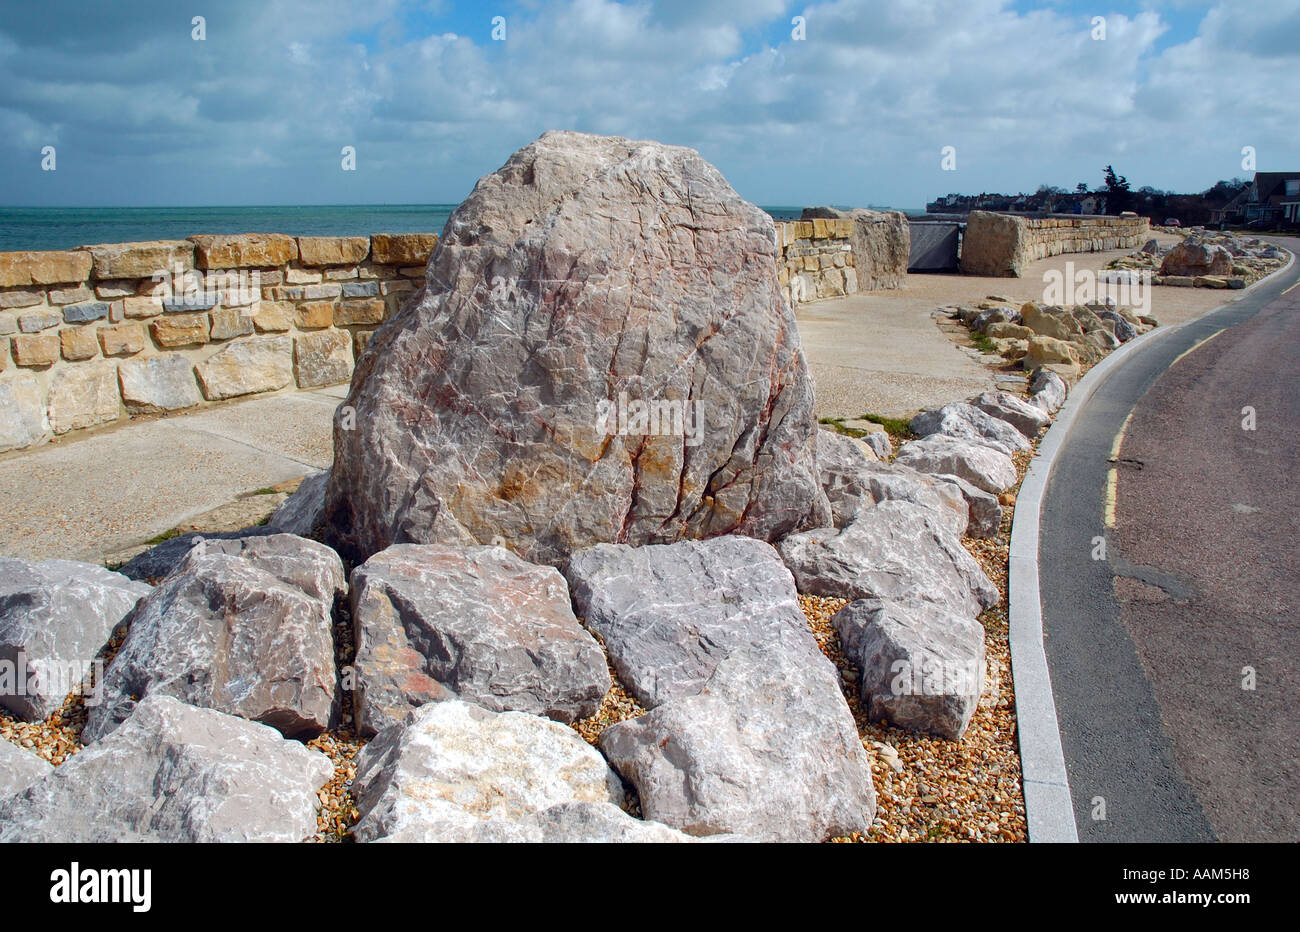 Anpassung an den Klimawandel, Meeresschutz, Seaview, Ryde, Isle of Wight, England, Großbritannien, GB. Stockfoto